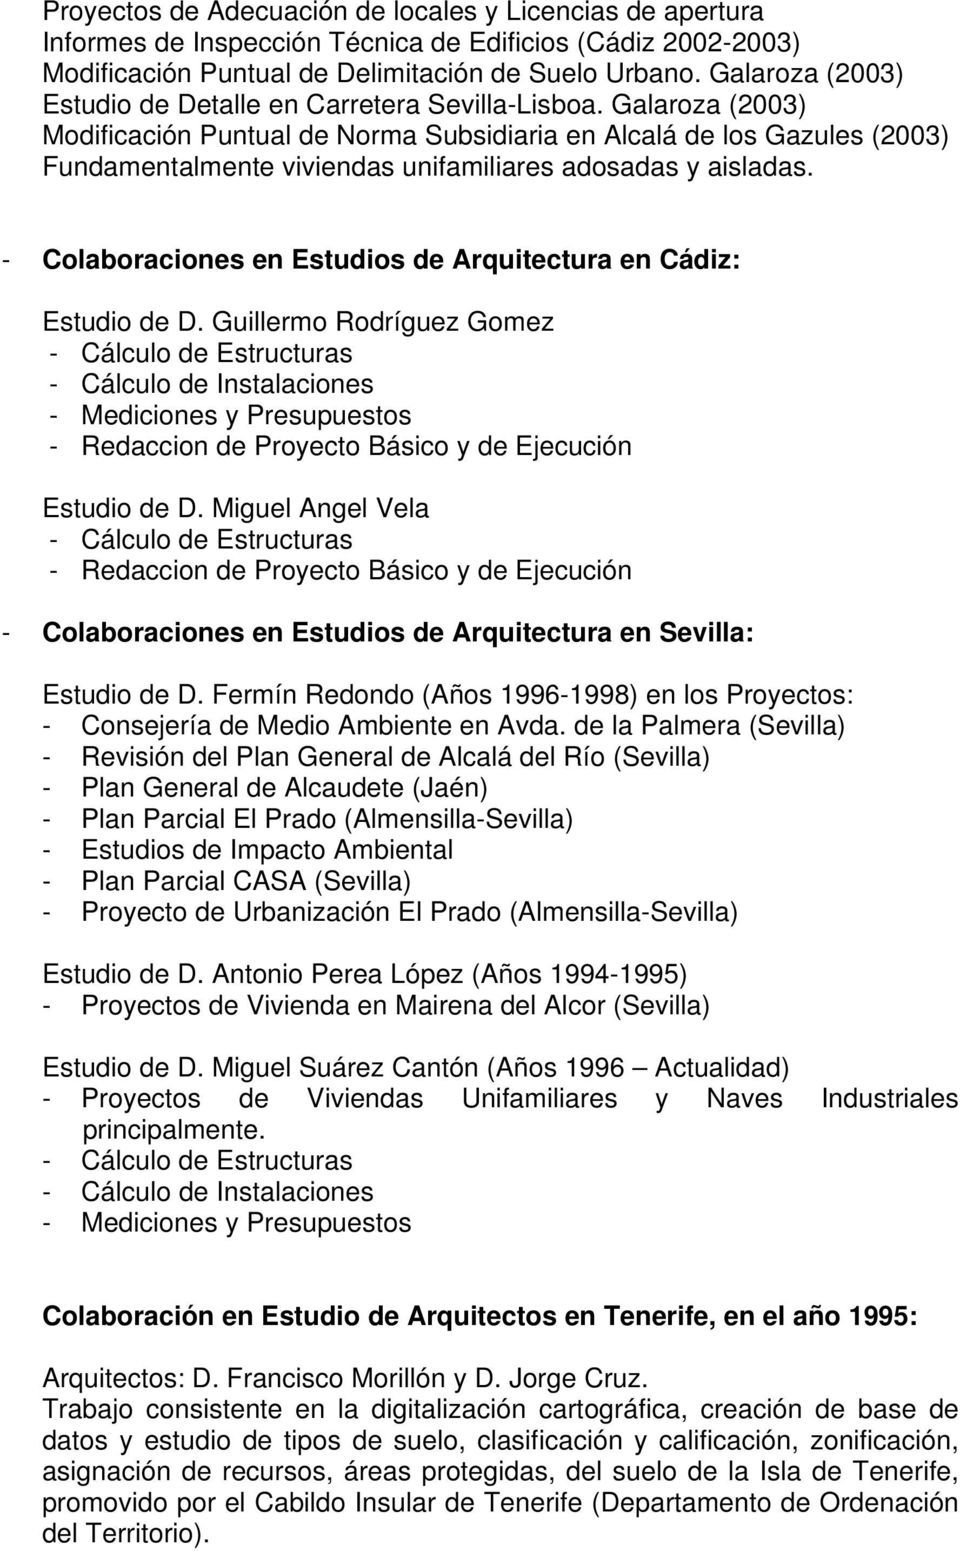 Galaroza (2003) Modificación Puntual de Norma Subsidiaria en Alcalá de los Gazules (2003) Fundamentalmente viviendas unifamiliares adosadas y aisladas.